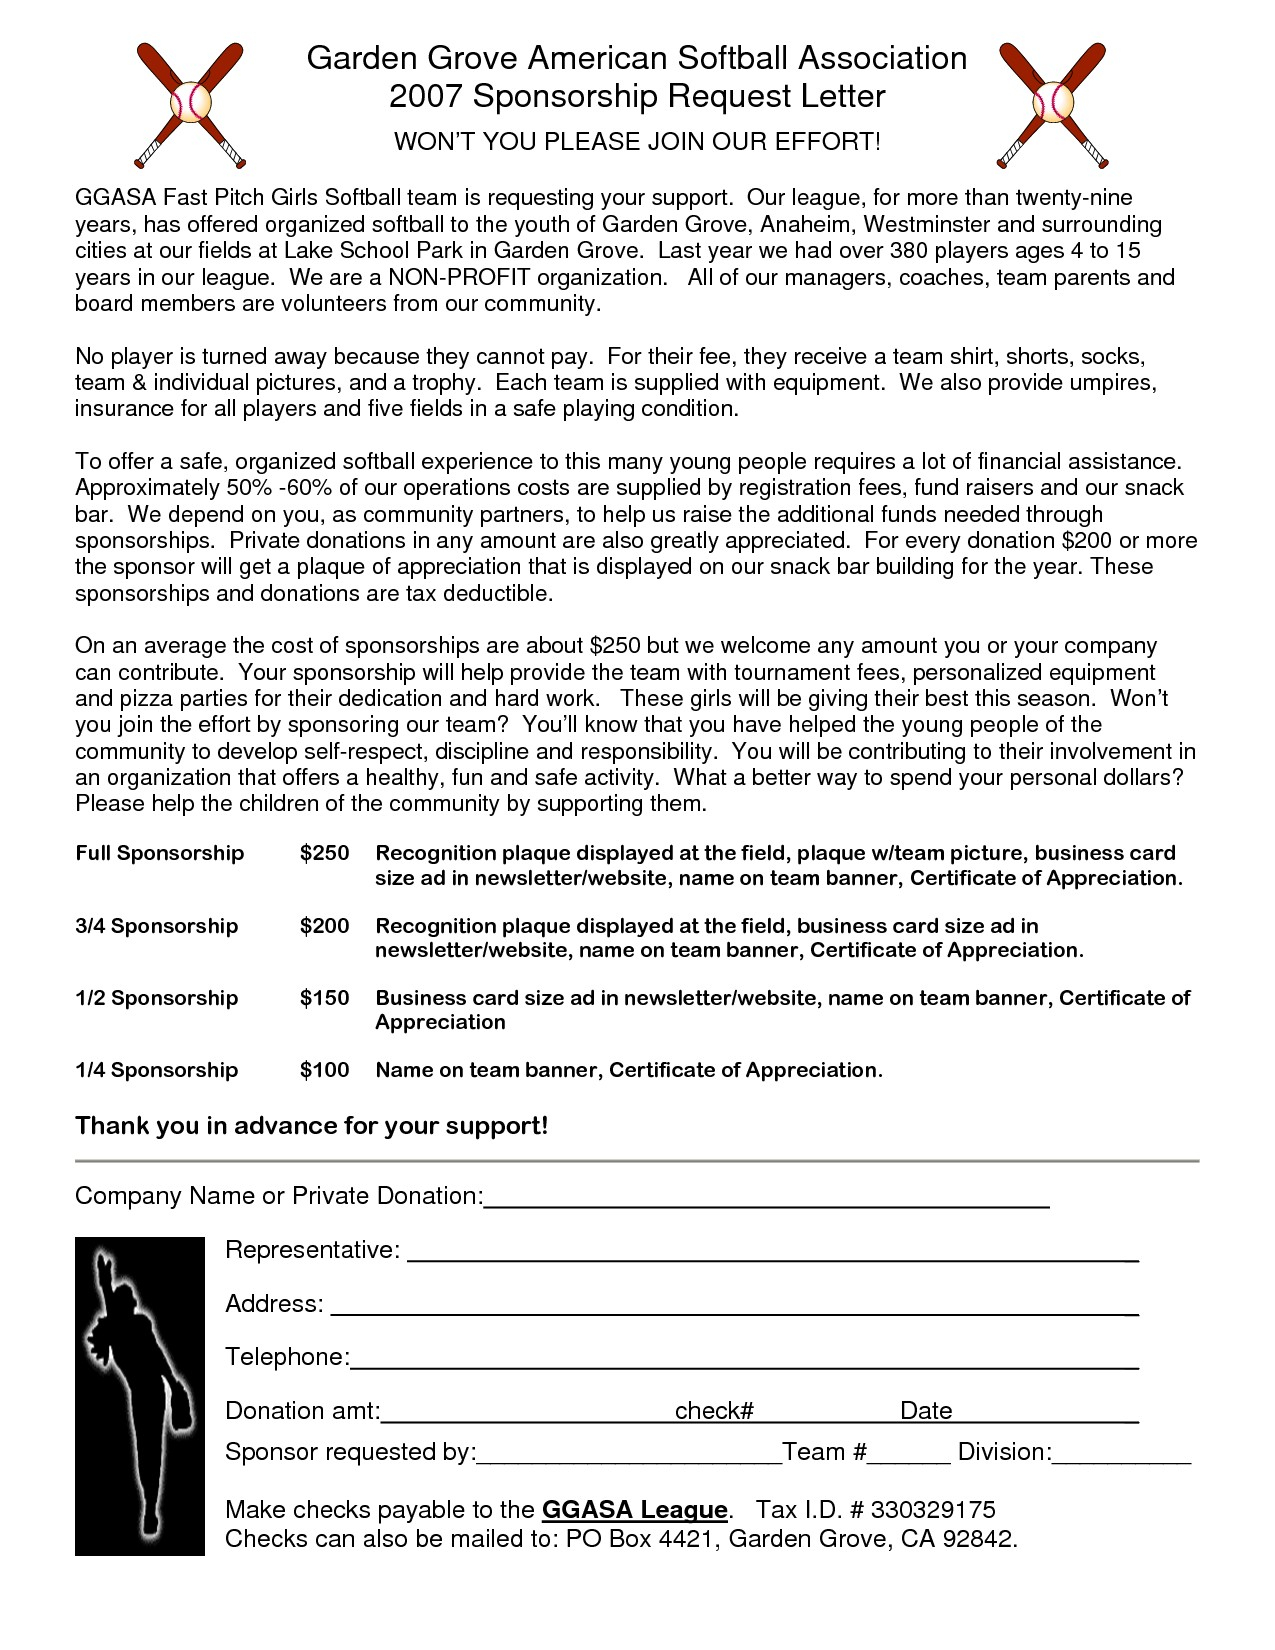 Softball Sponsorship Letter Template - Business Donation Letter Template Refrence Sample Sponsorship